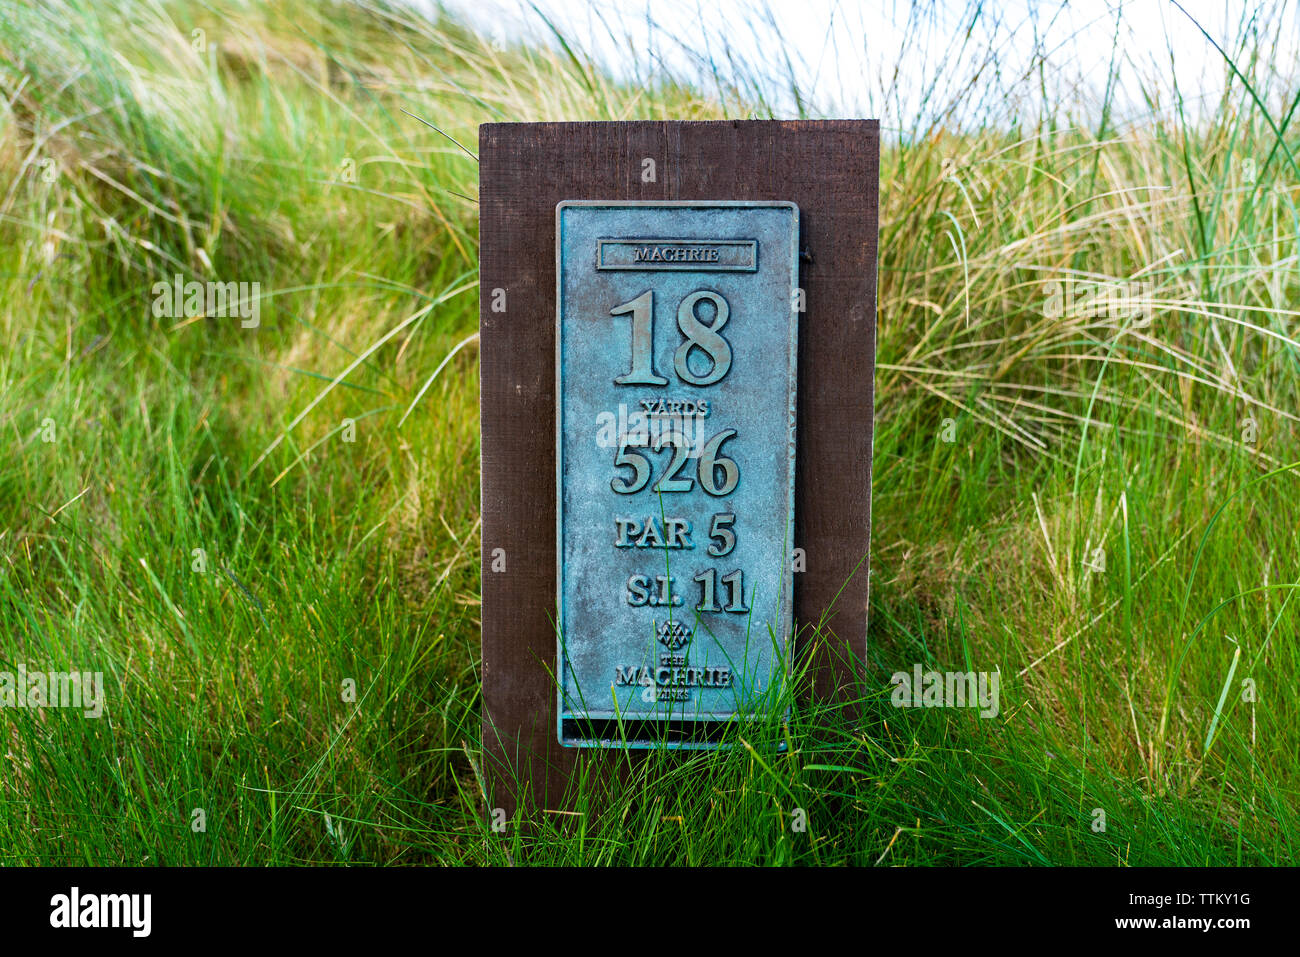 Anzeigen von machrie Golf Links Golf Course auf Islay. In der Inneren Hebriden, Schottland, Großbritannien Stockfoto